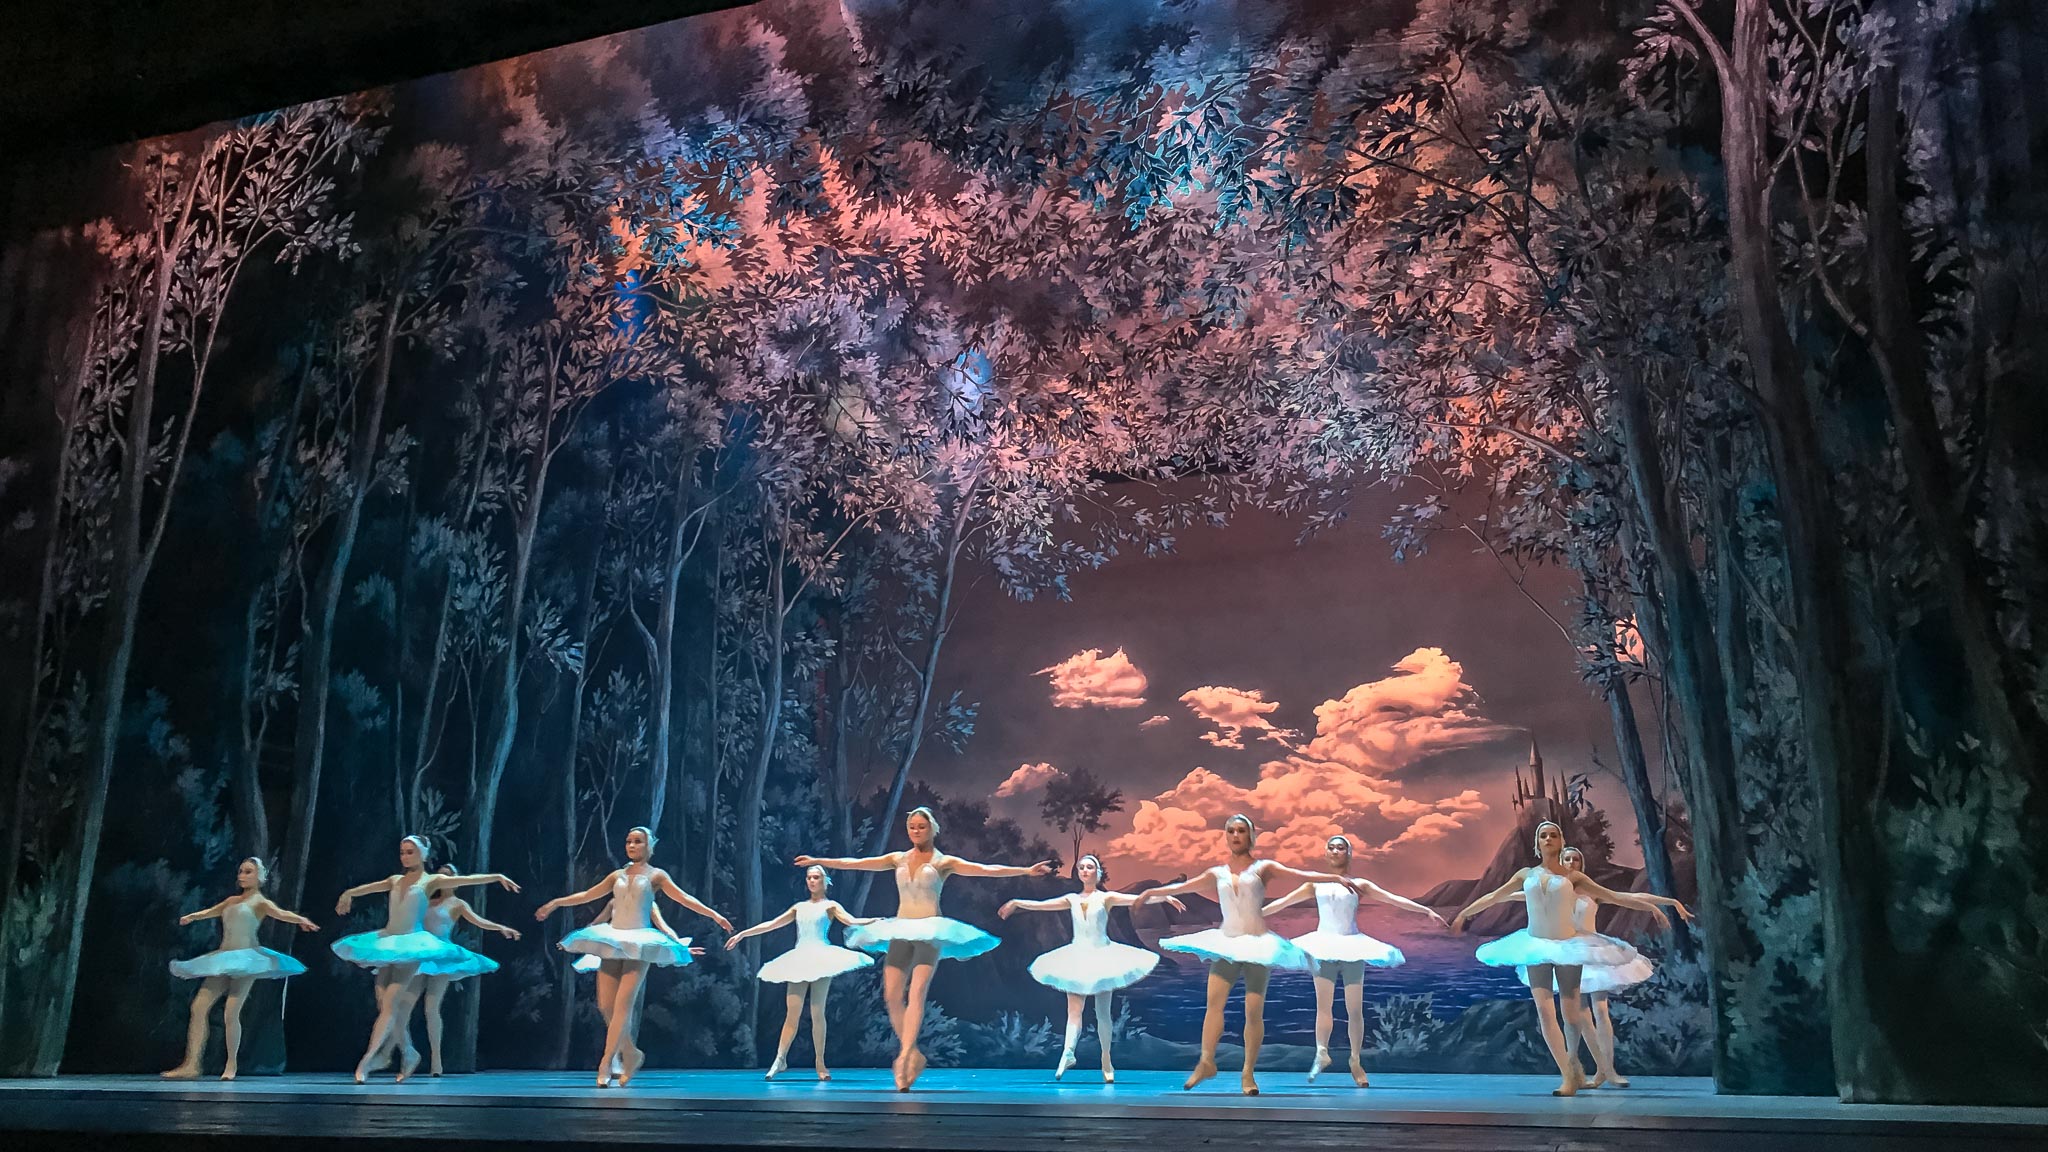 Swan Lake at the Russian Ballet